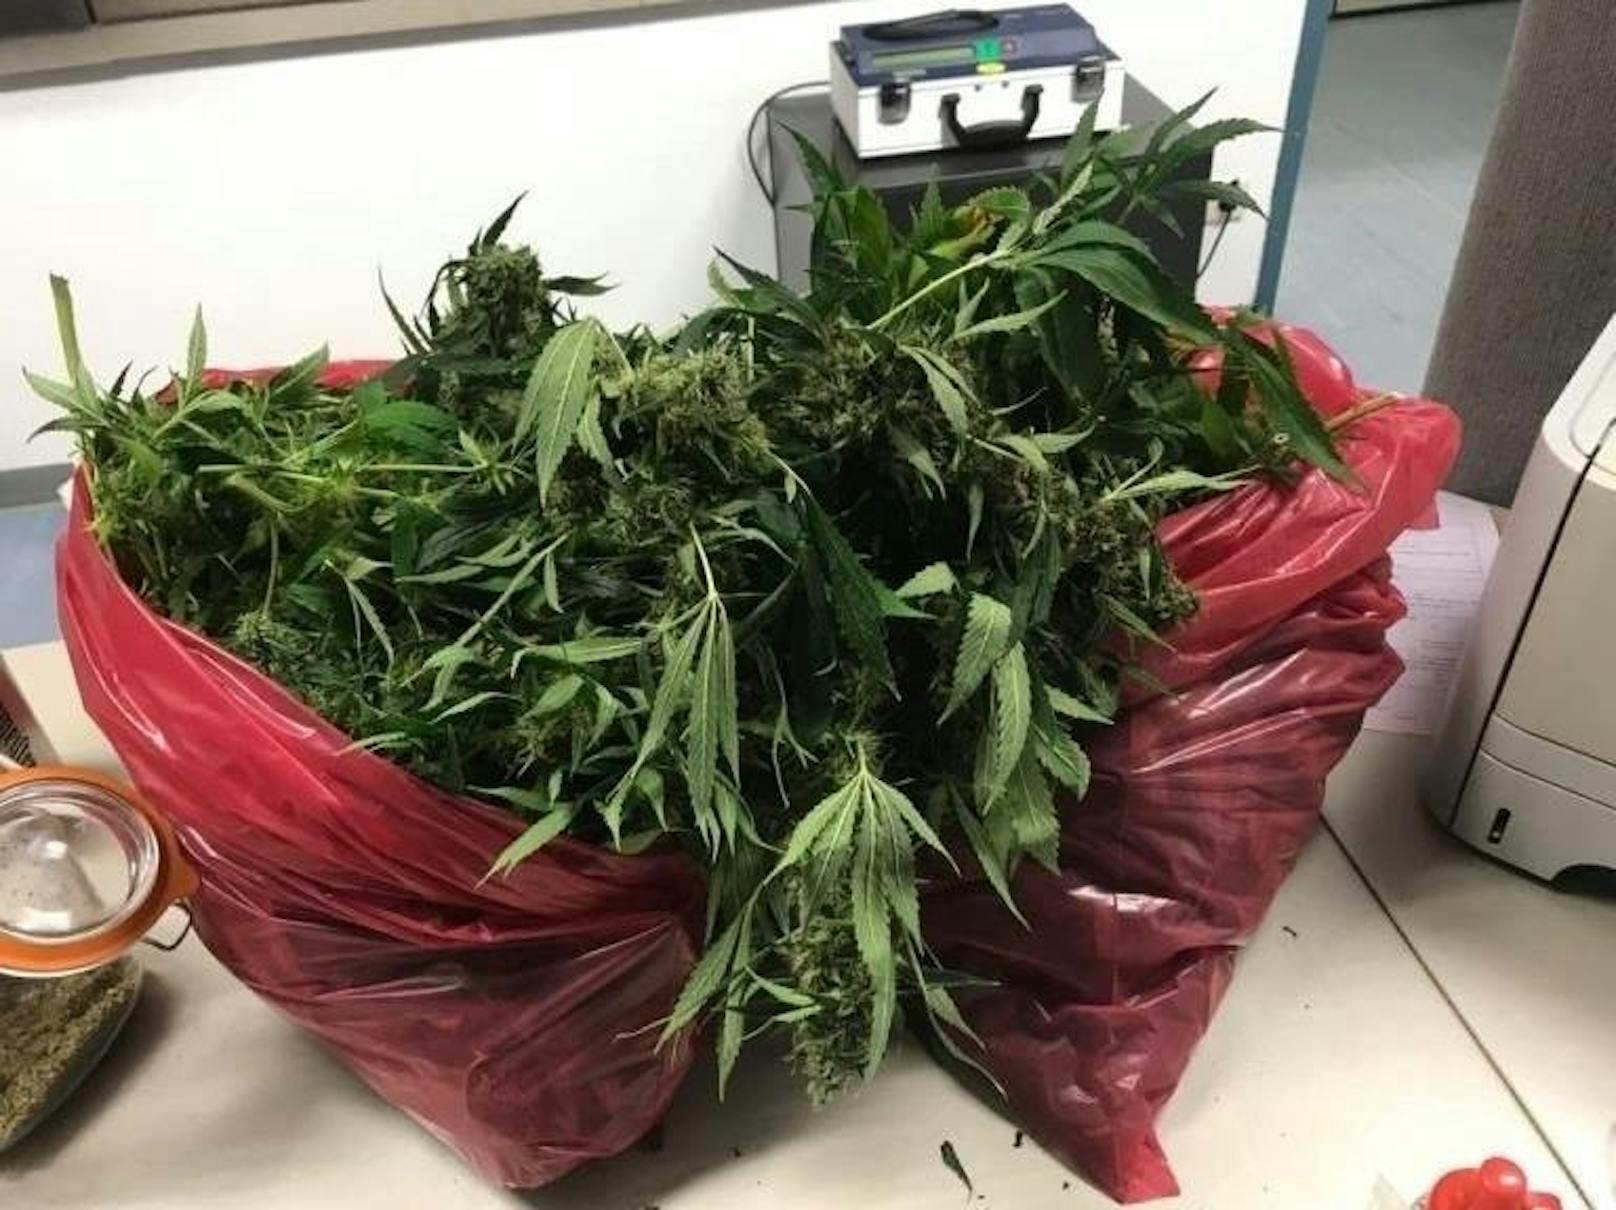 Zudem wurden ein Schlagring, mehrere mit Cannabis gefüllte Baggies und Gefrierfolien, 32 Hanf-Pflanzen und 53 Stück Tabletten, vermutlich Ecstasy, sichergestellt.